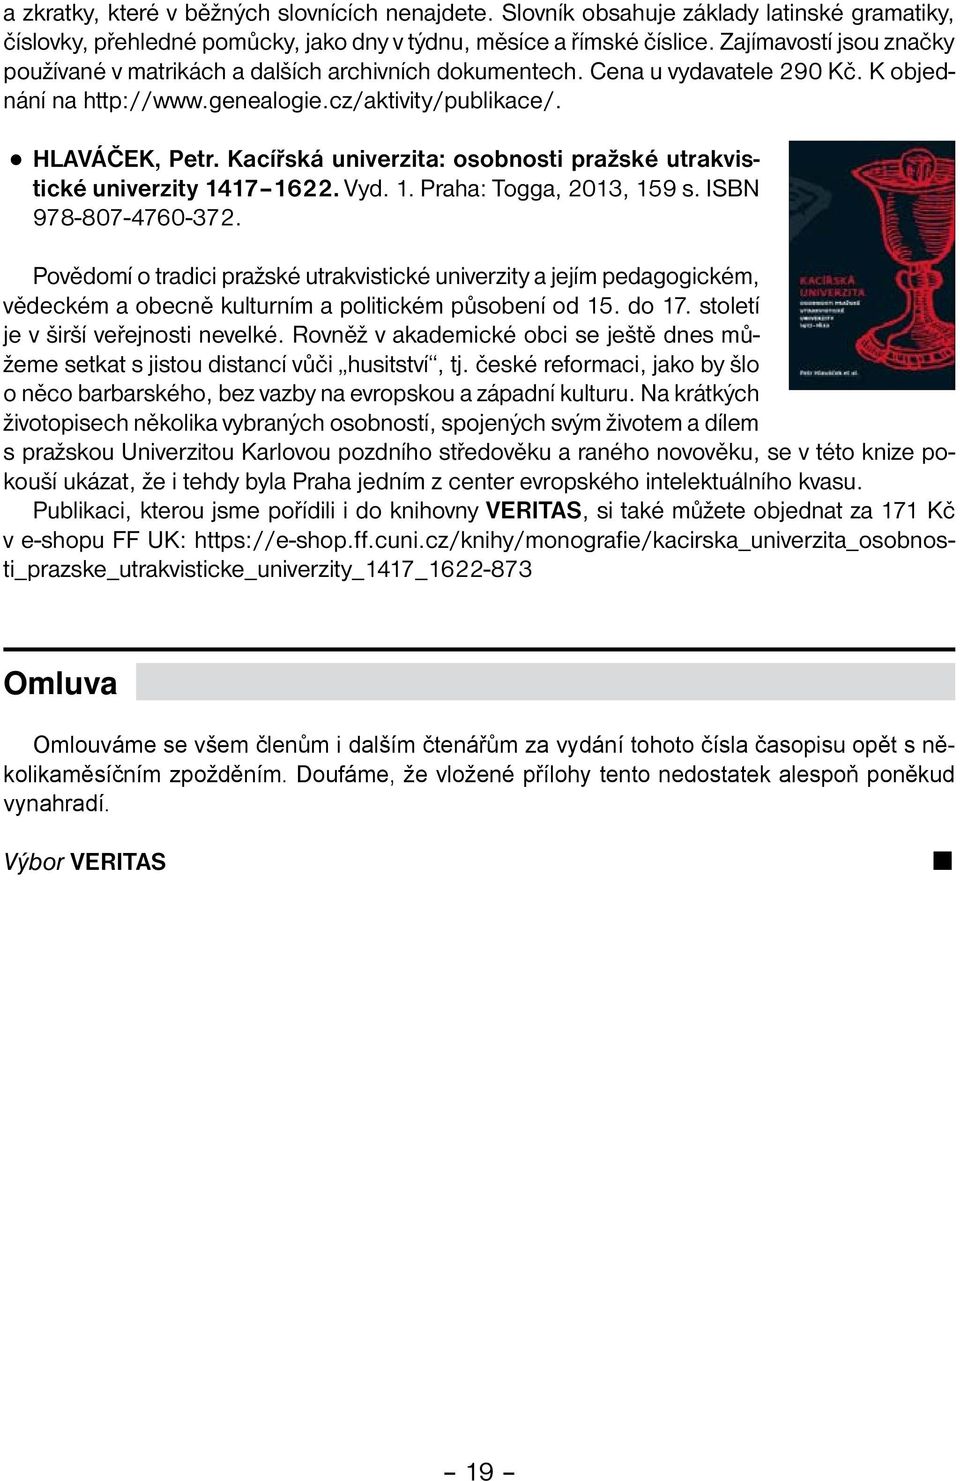 Kacířská univerzita: osobnosti pražské utrakvistické univerzity 1417 1622. Vyd. 1. Praha: Togga, 2013, 159 s. ISBN 978 807 4760 372.